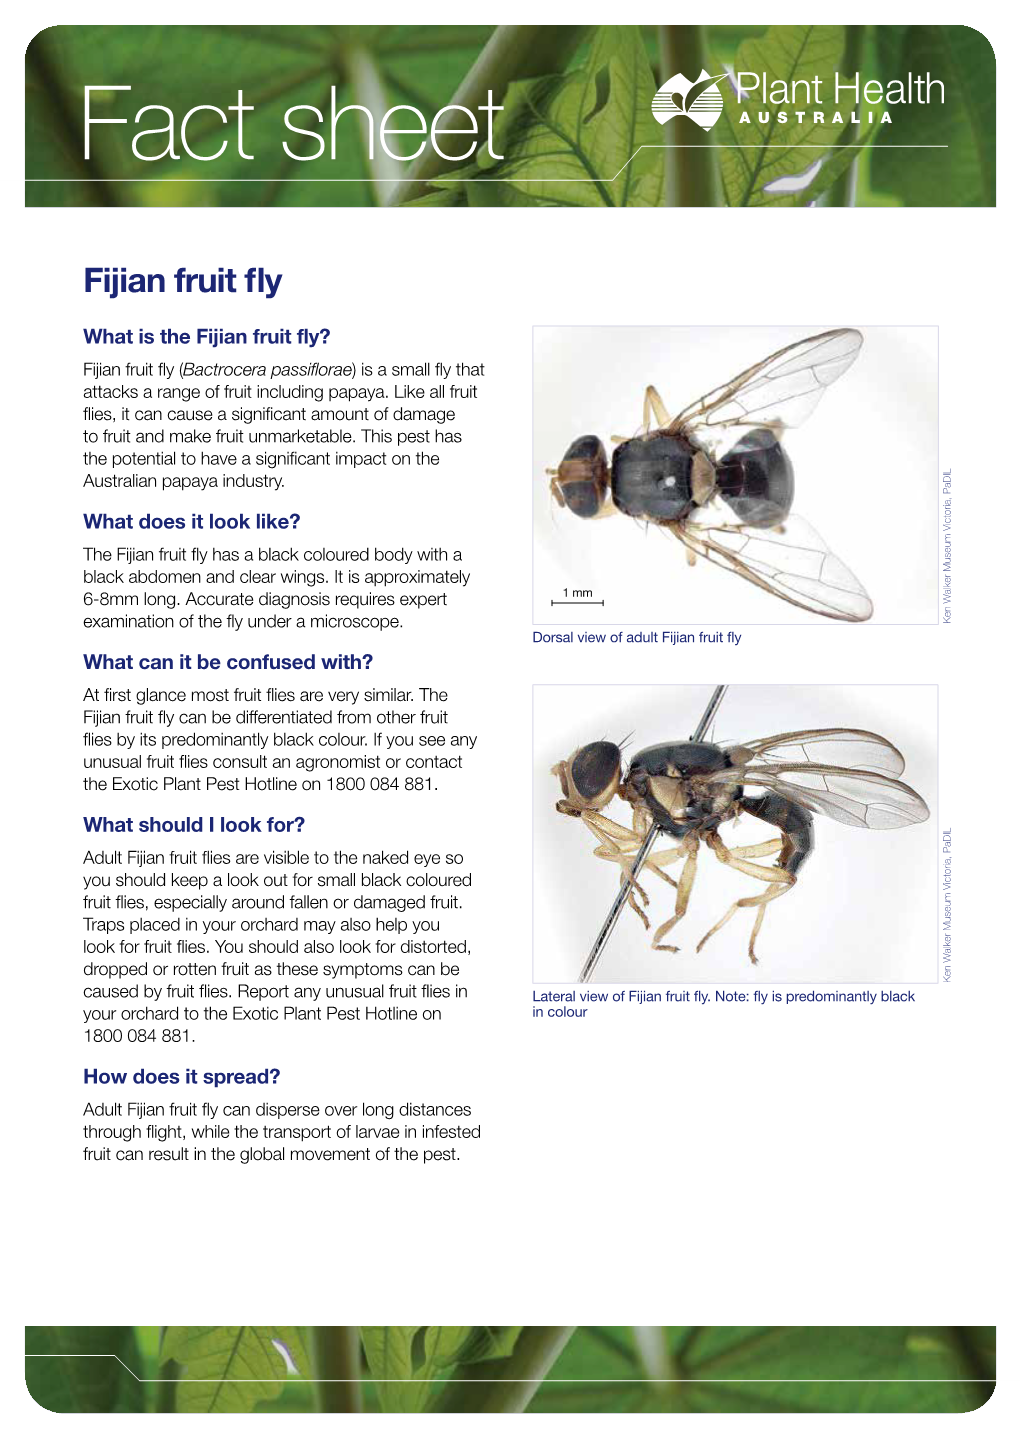 Fijian Fruit Fly